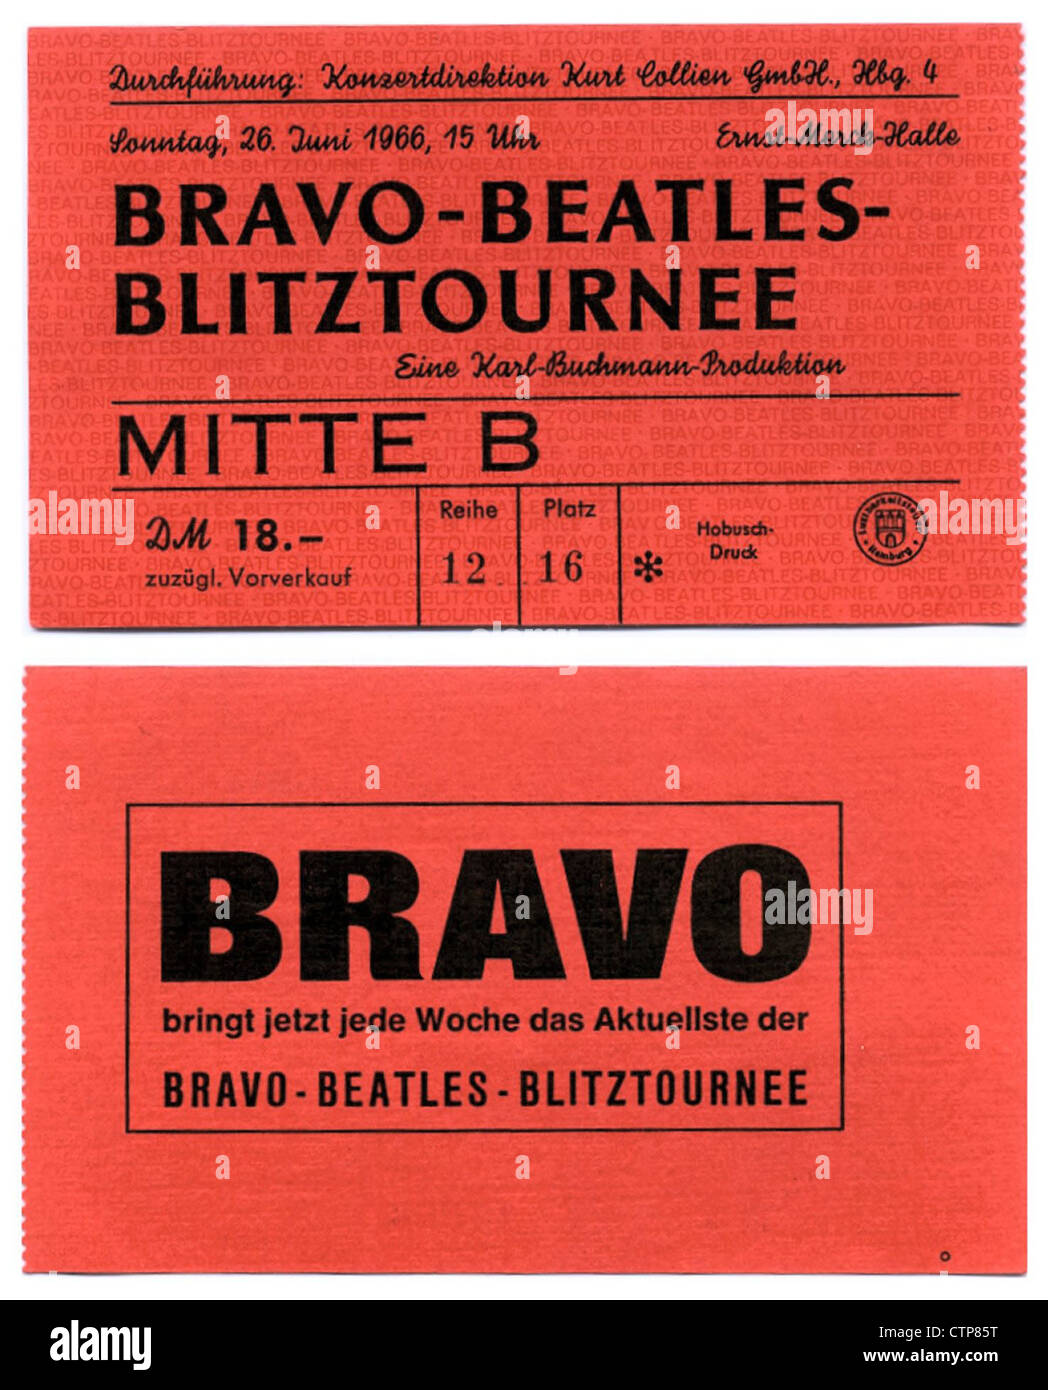 001566 - die Beatles Bravo Blitztournee Konzertkarte von Ernst-Merck-Halle in Hamburg am 26. Juni 1966 Stockfoto